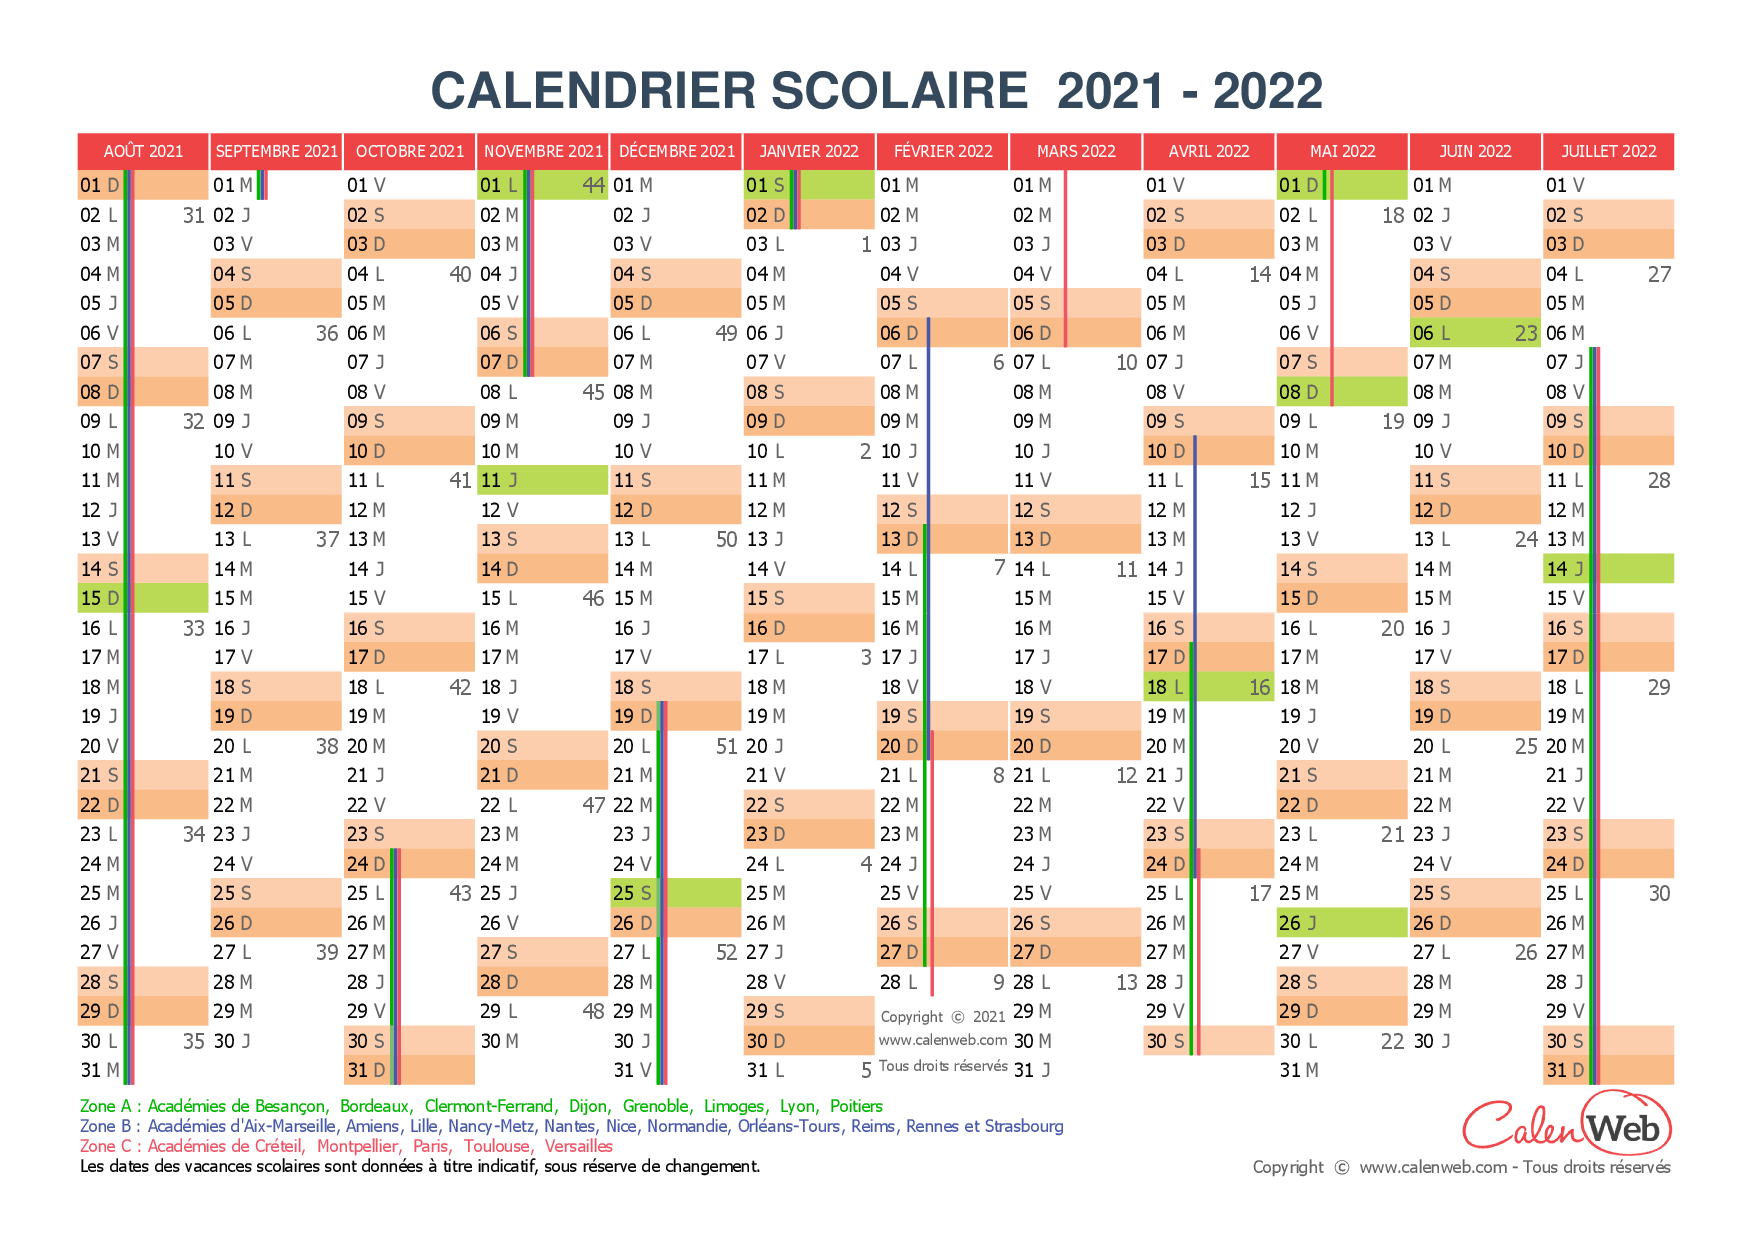 Calendrier Jour Férié 2022 Calendrier scolaire annuel 2021 2022 avec affichage des jours 